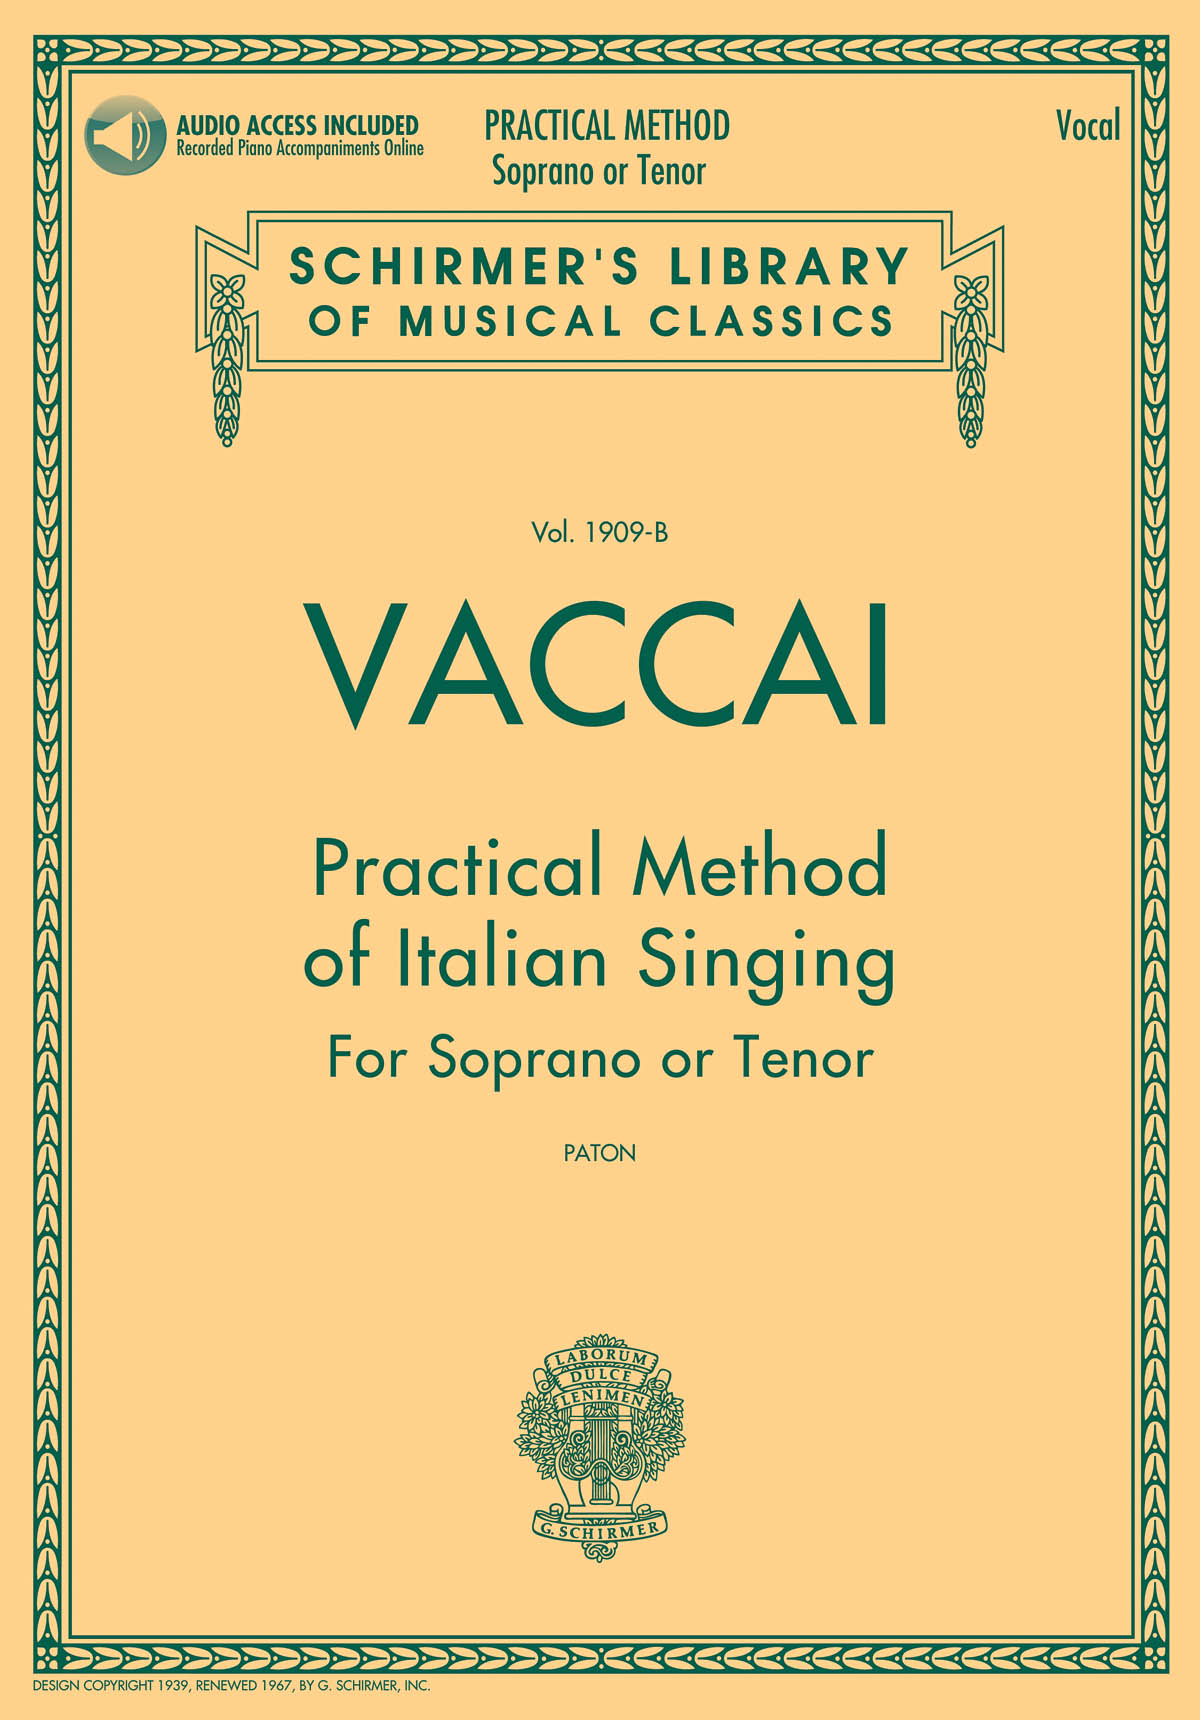 Practical Method of Italian Singing  - for Soprano or Tenor - učebnice zpěvu